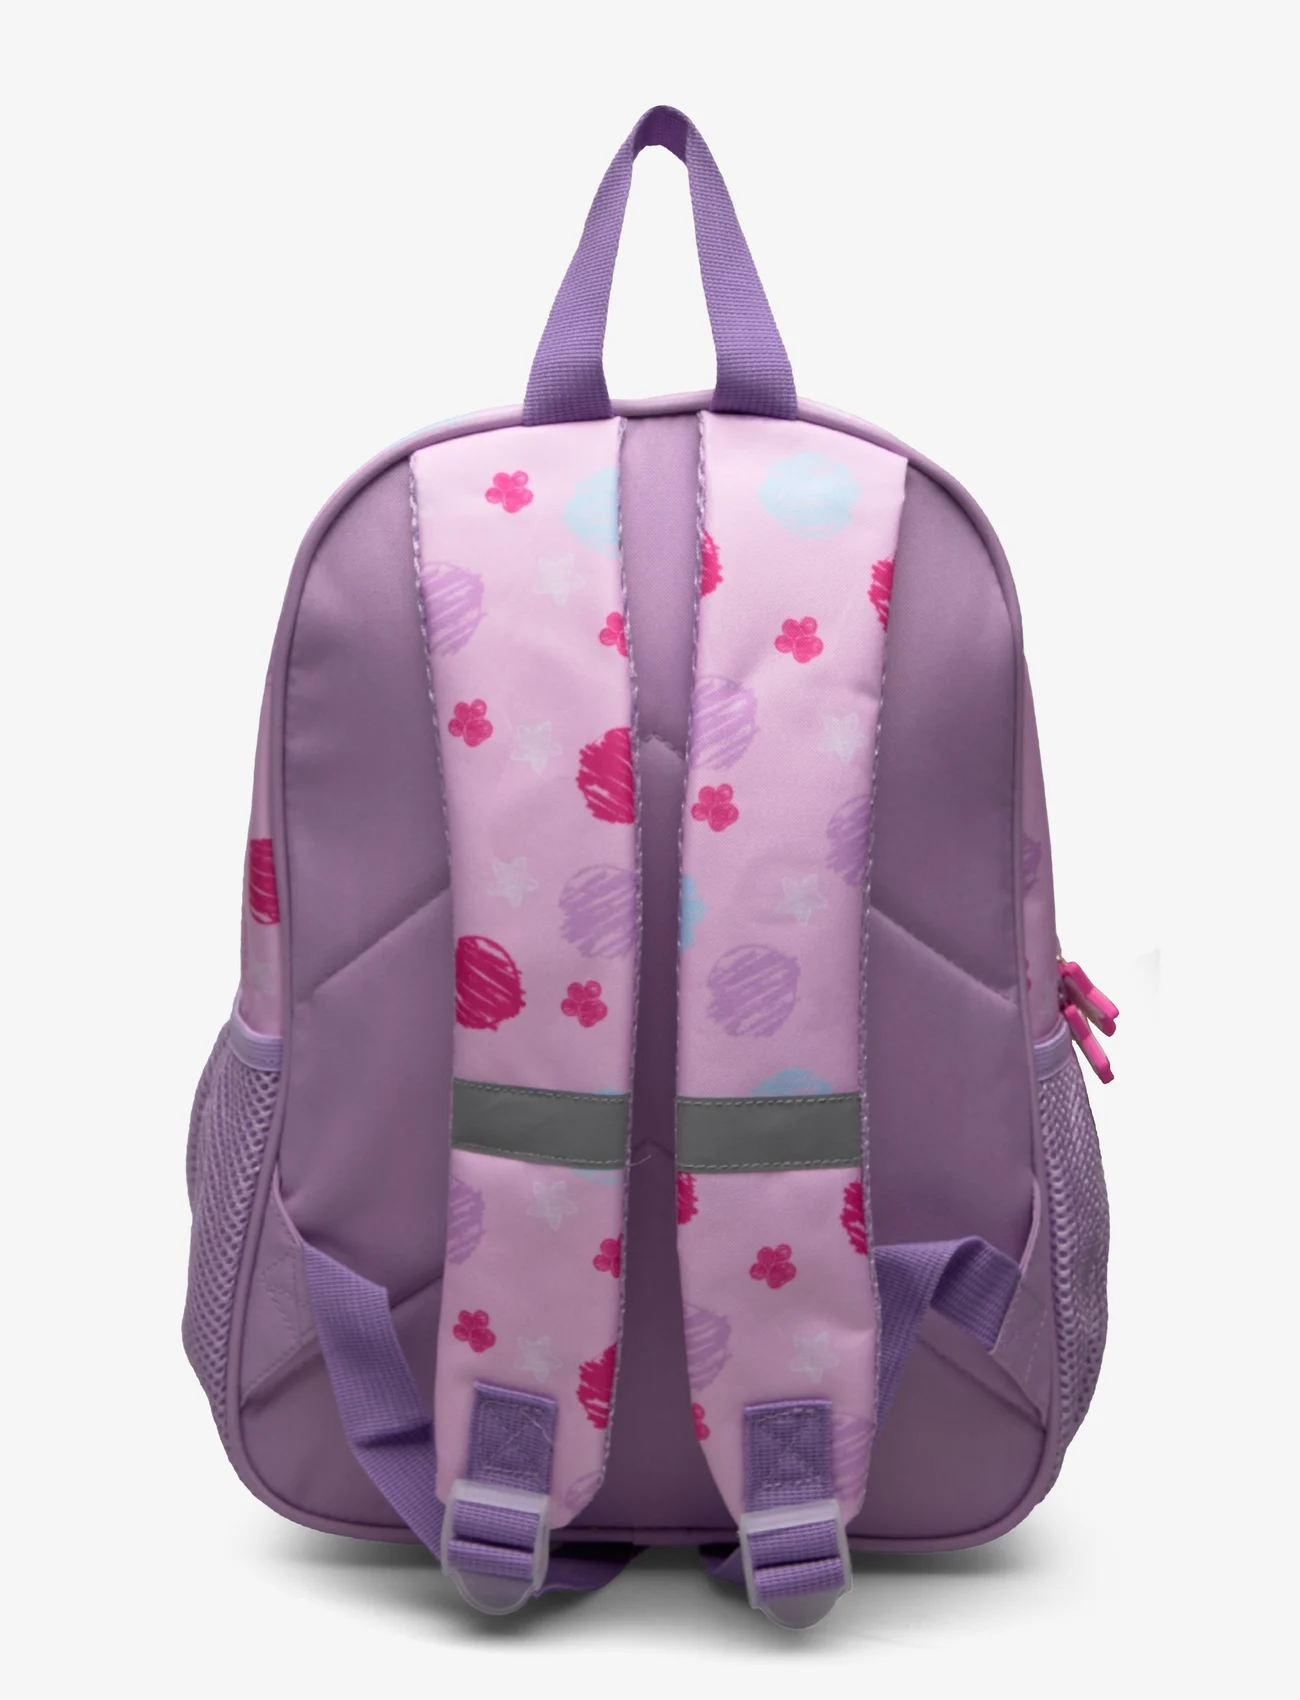 Euromic - PAW PATROL GIRLS, medium backpack - gode sommertilbud - pink - 1